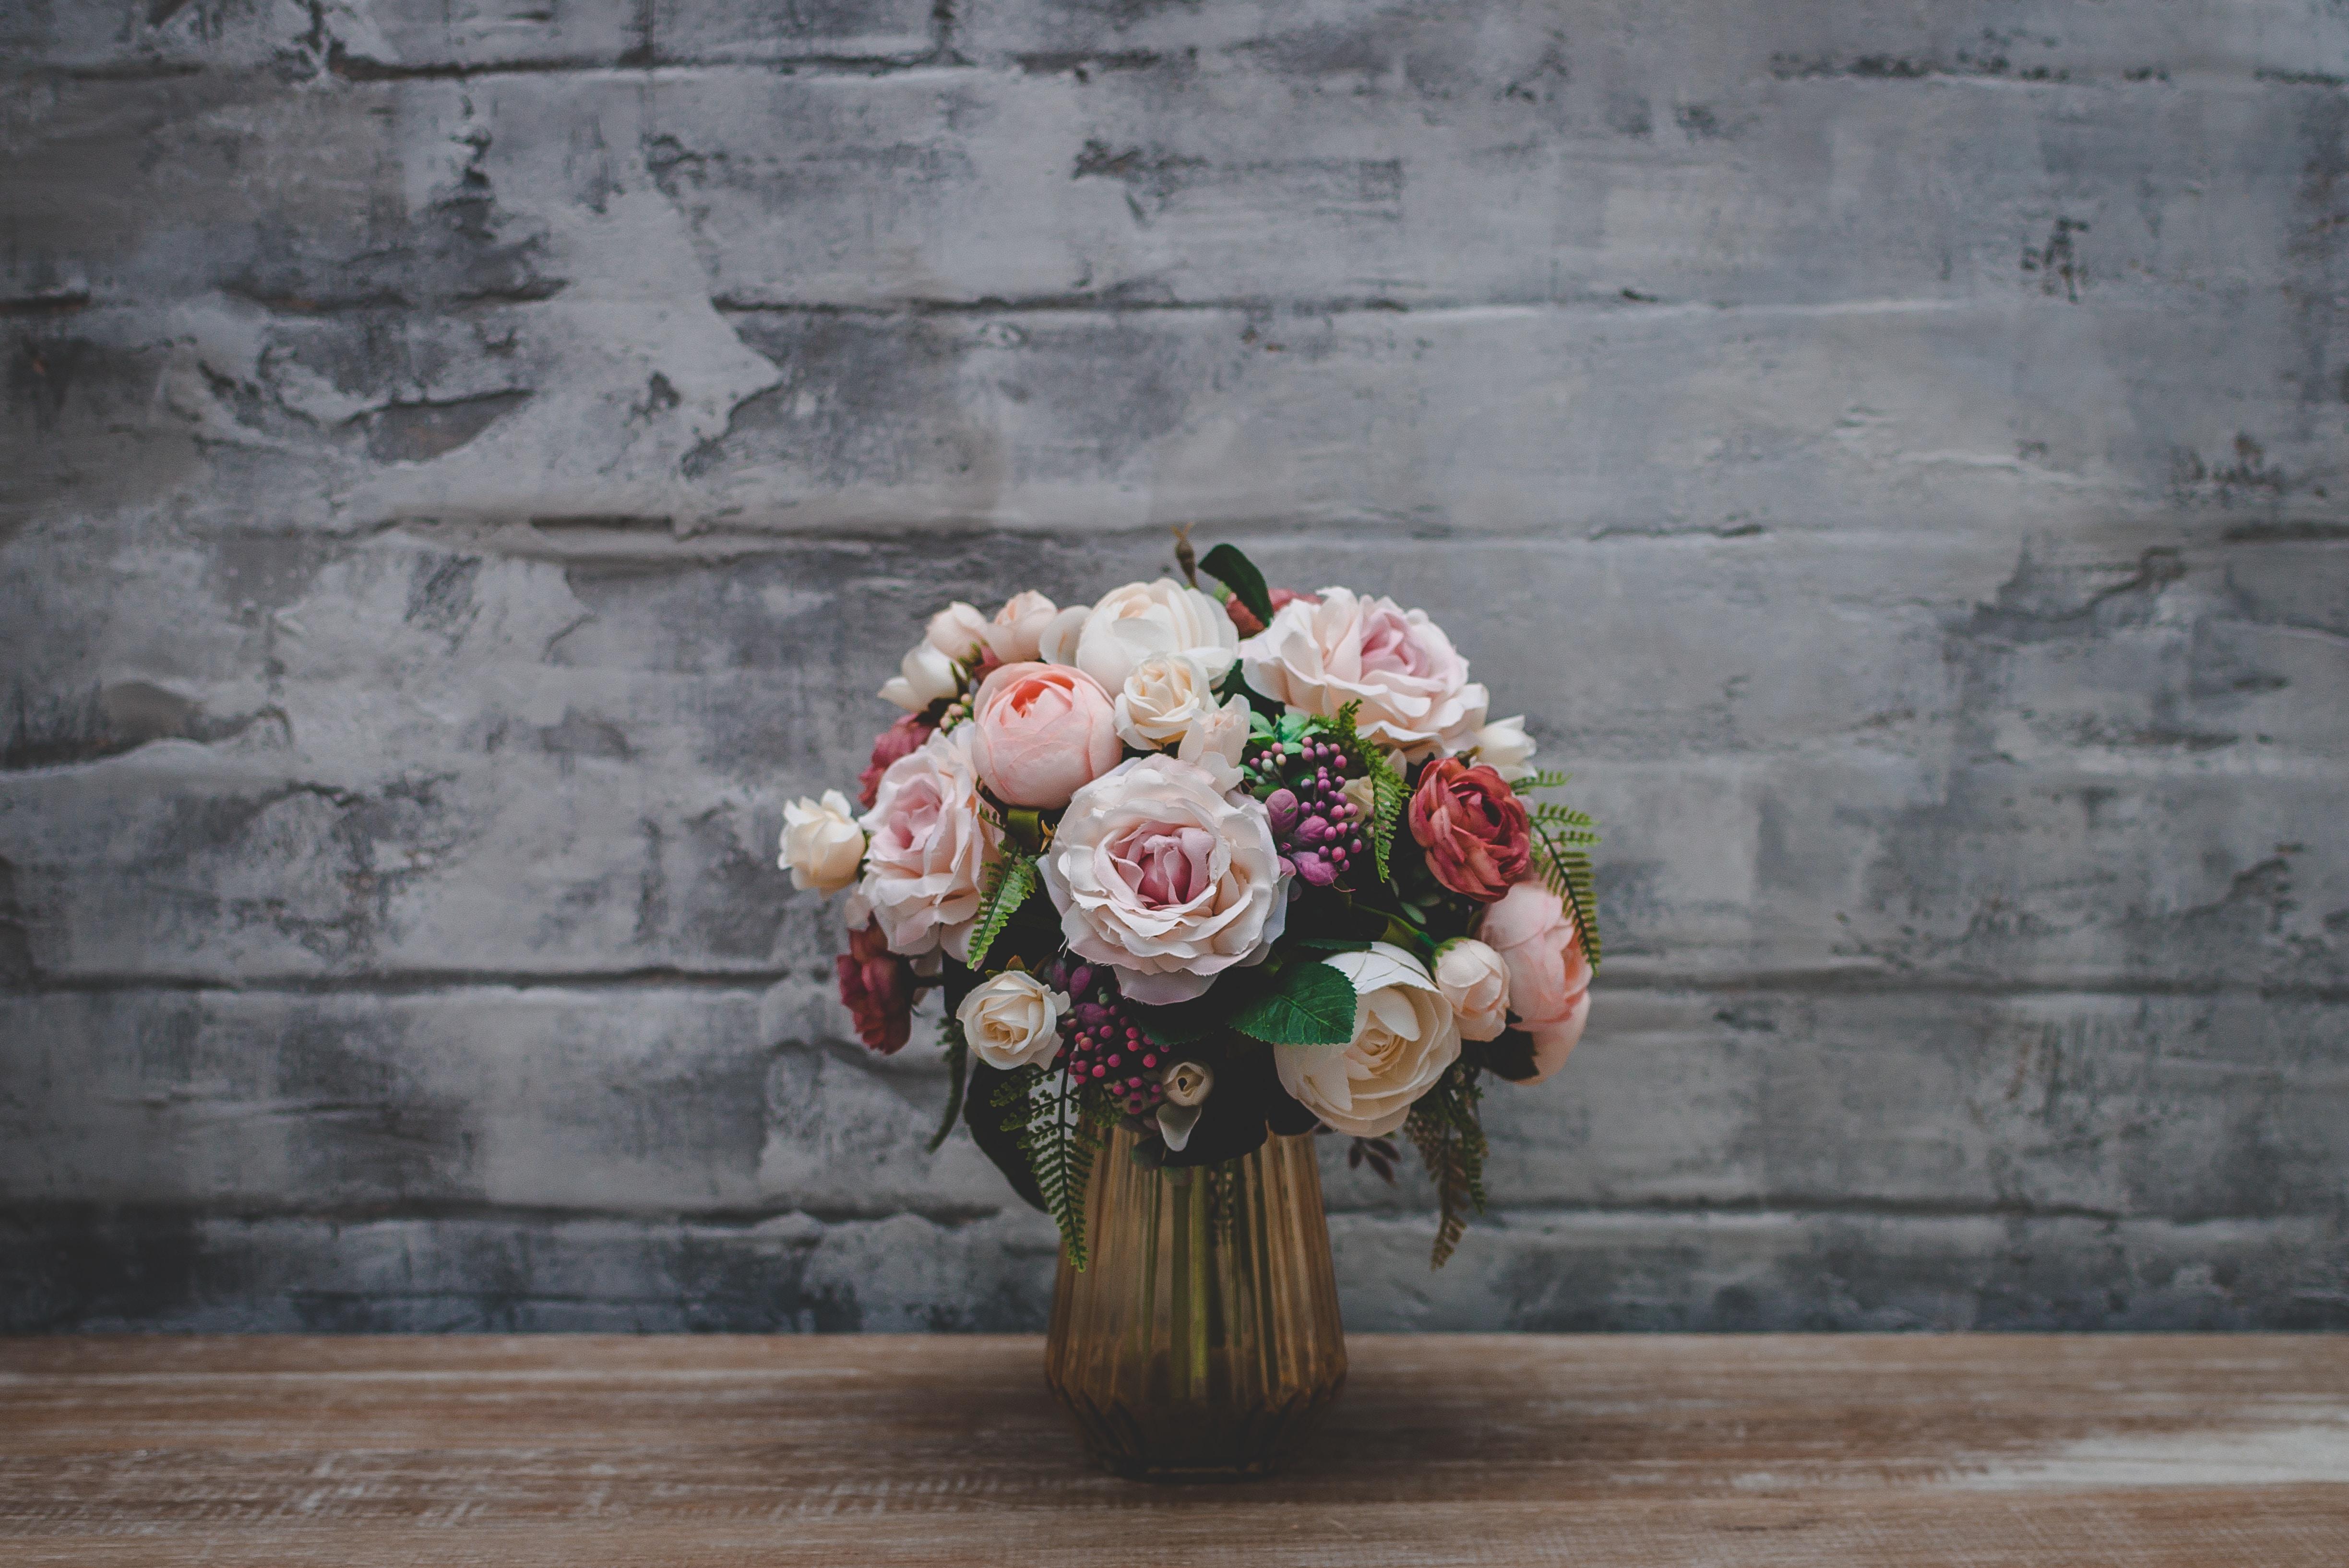 Mawar, Karangan Bunga, Bunga, Vas - Vase 4k - HD Wallpaper 